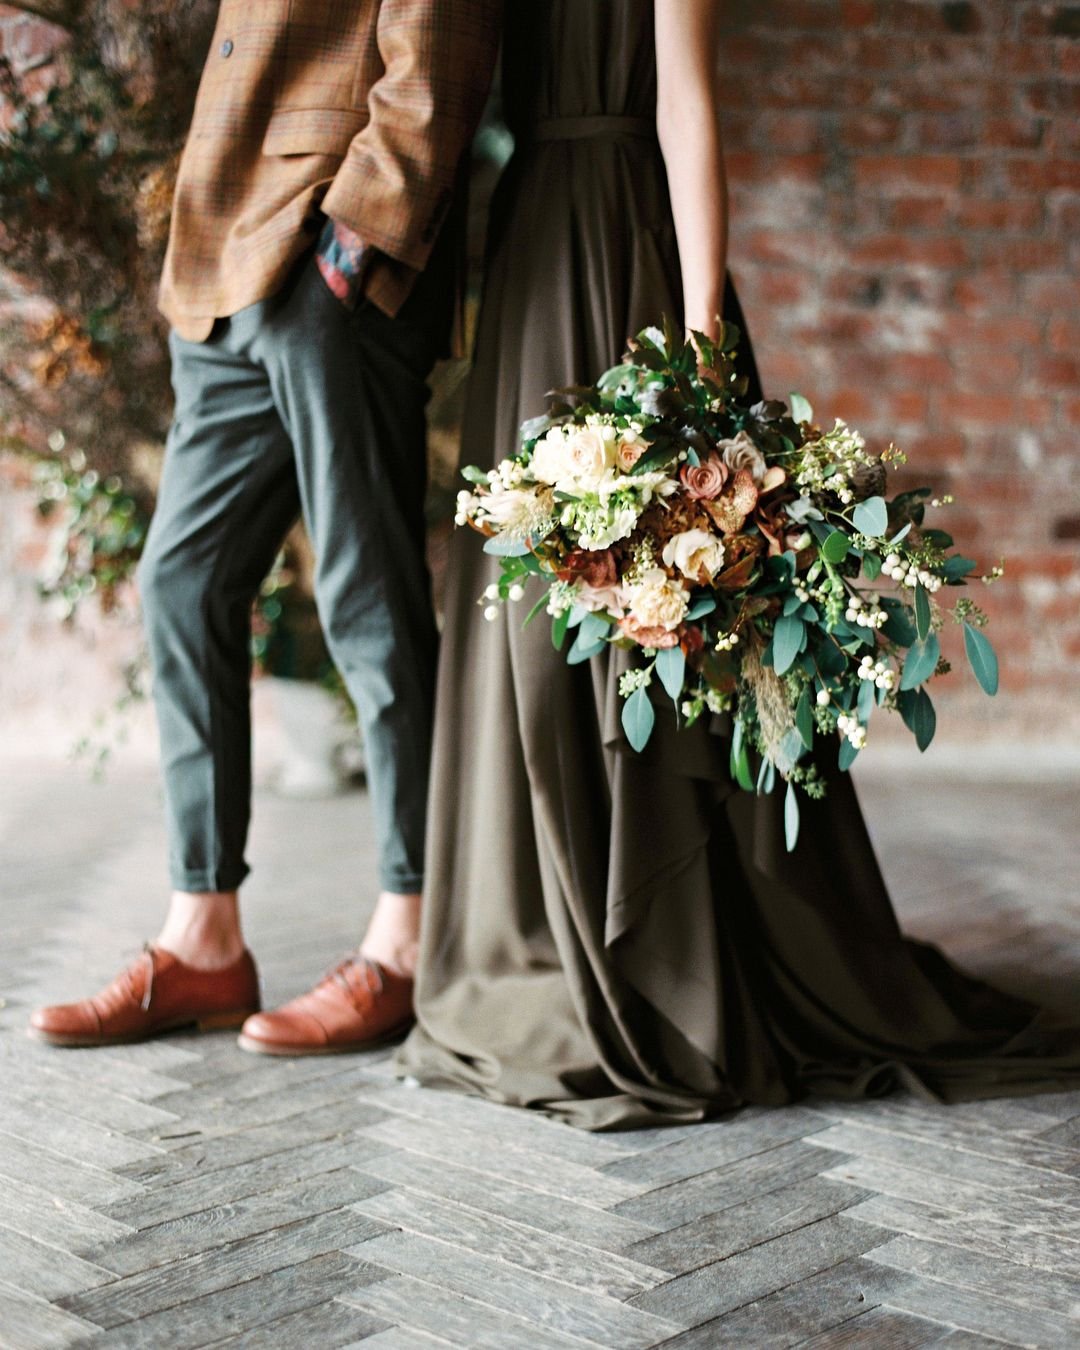 Свадьба в цвете хаки